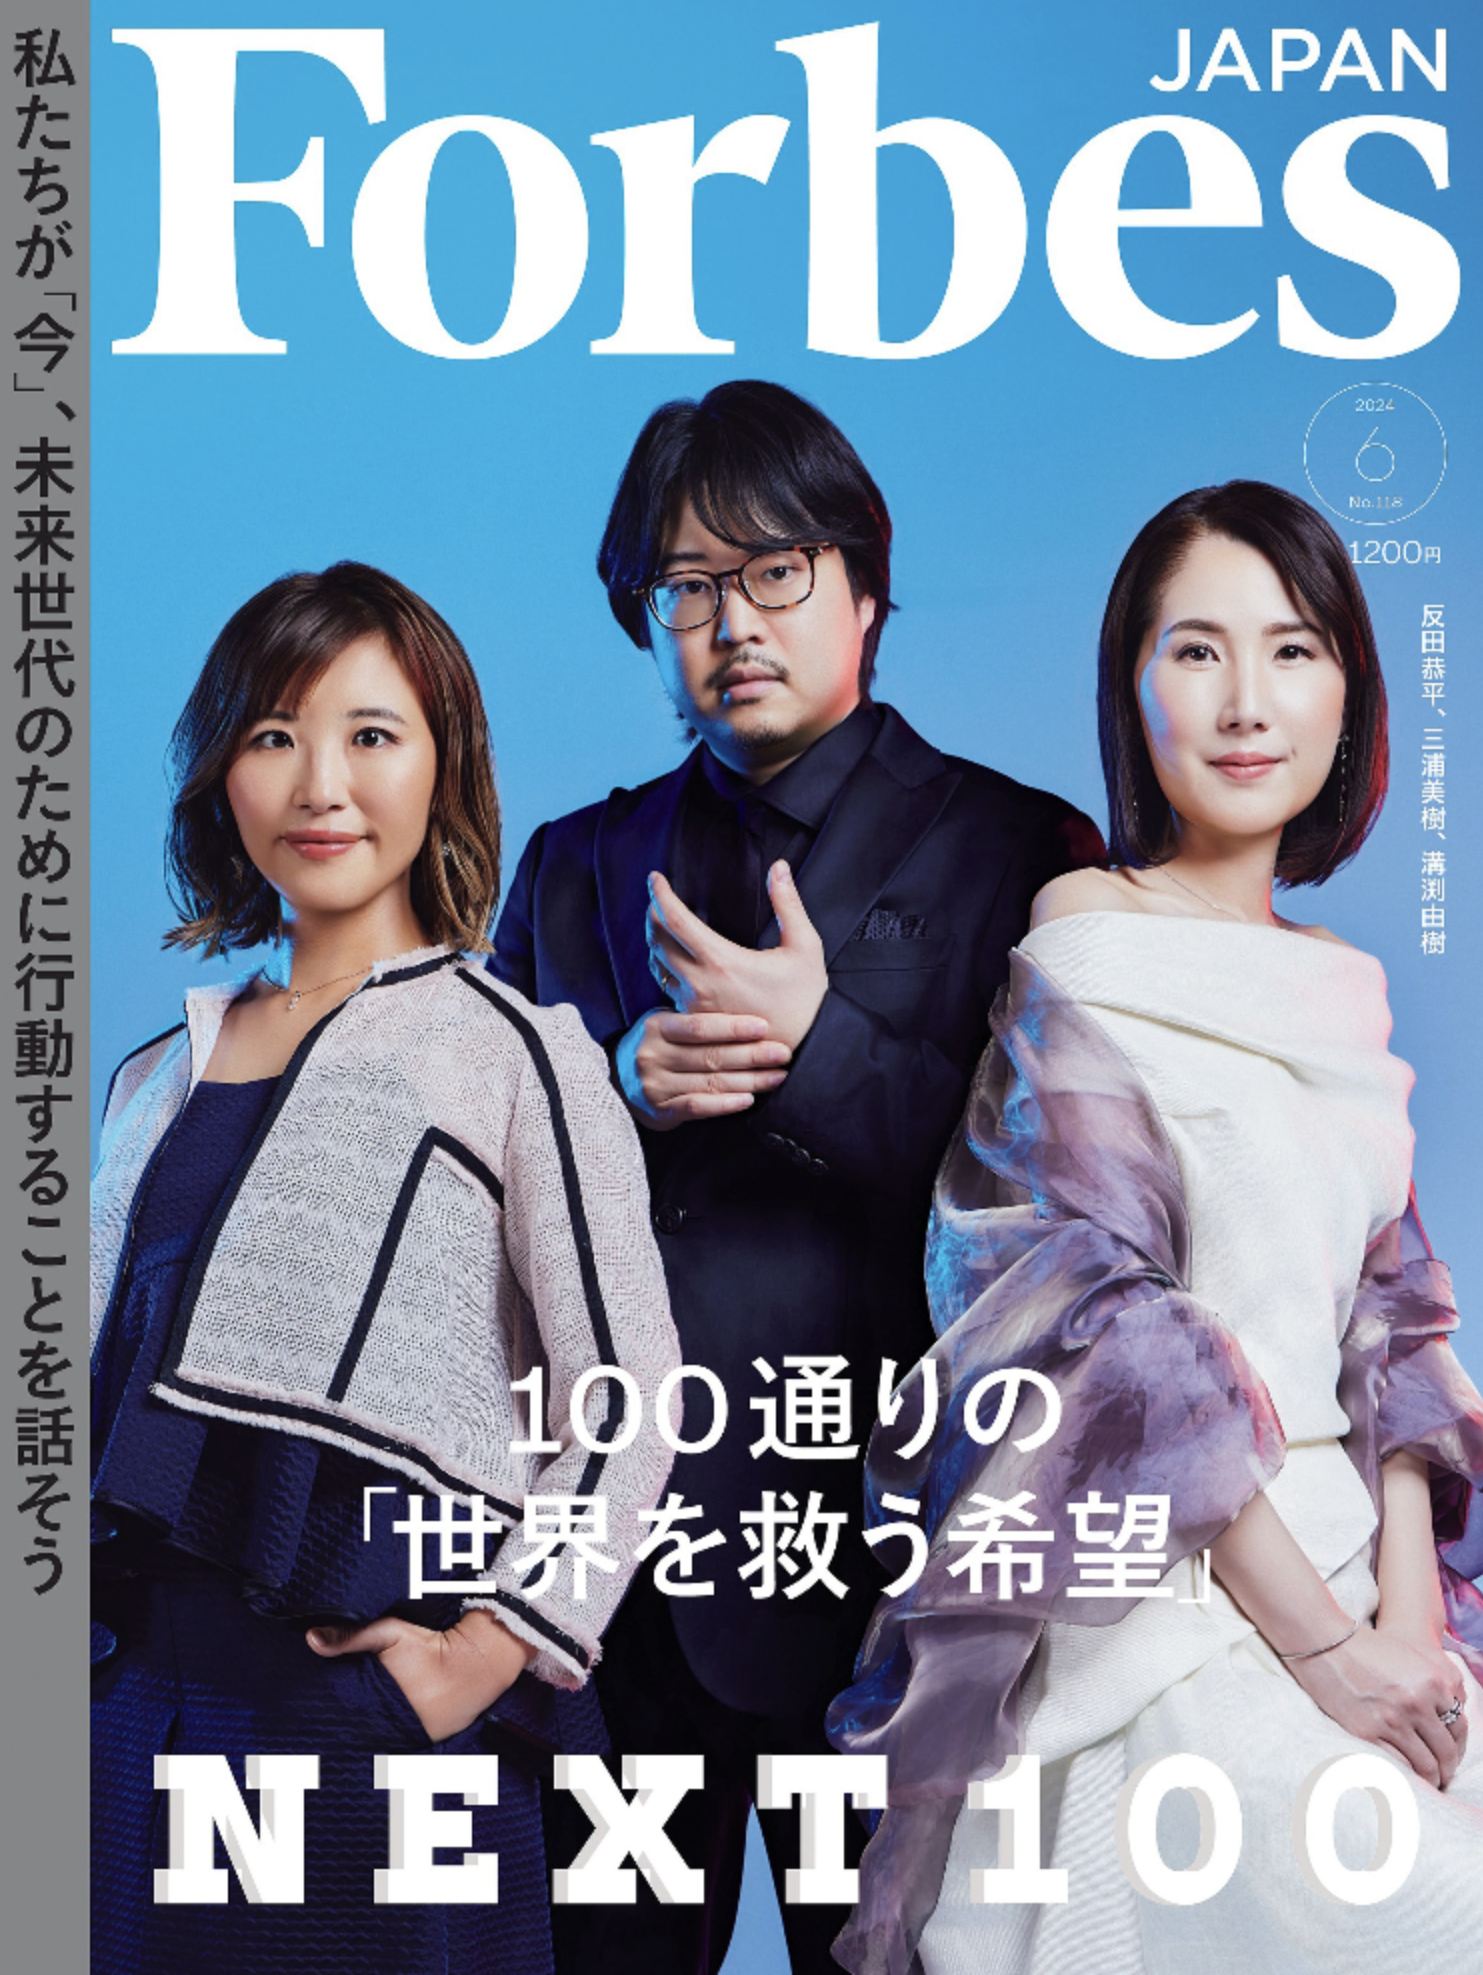 4月25日発売の月刊「Forbes JAPAN」 6月号に代表の西村が掲載されました！